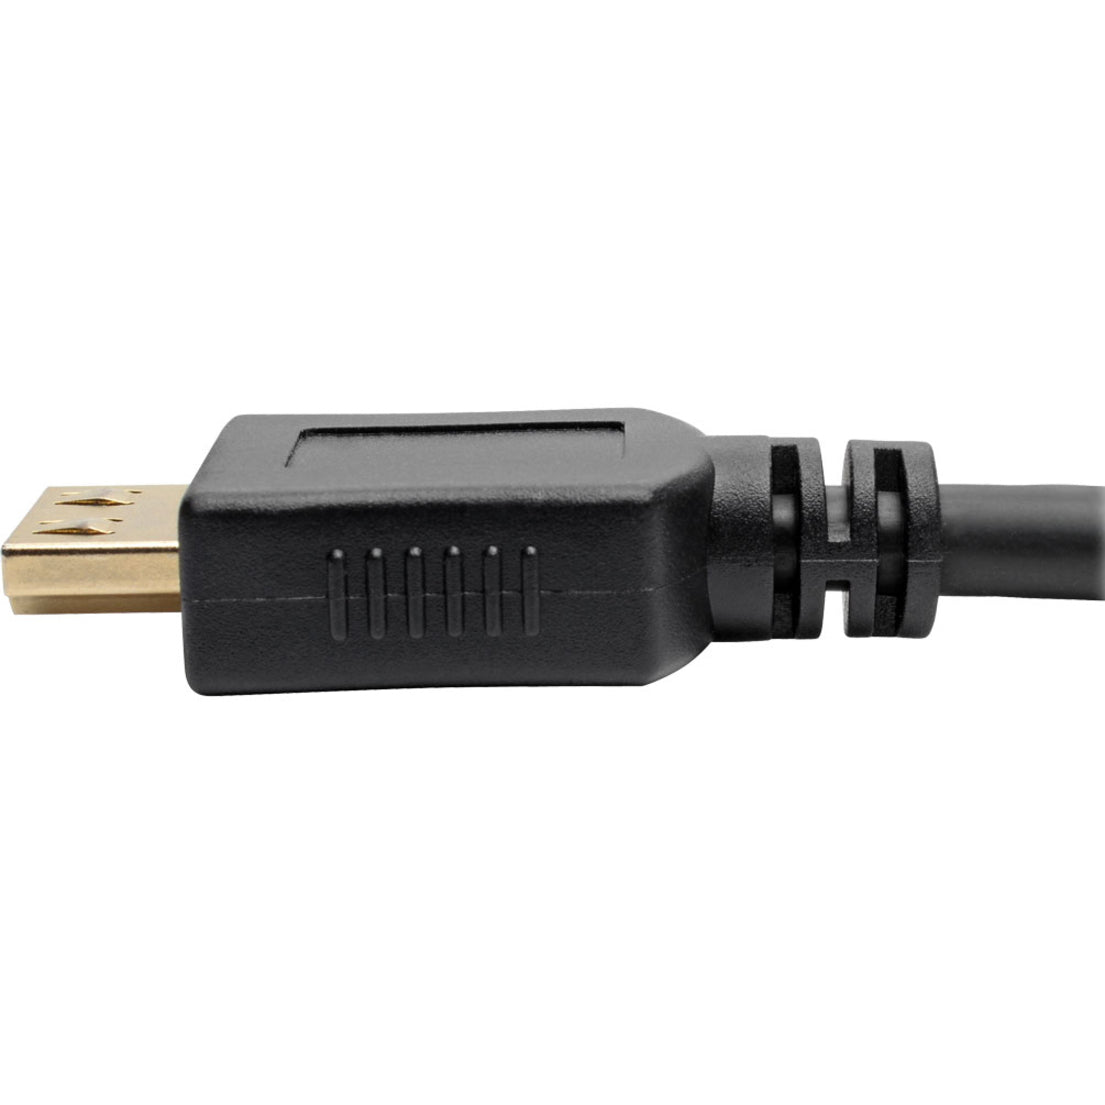 Tripp Lite P568-016-BK-GRP High-Speed HDMI-Kabel 16 ft. mit Greifsteckern - 4K Schwarz